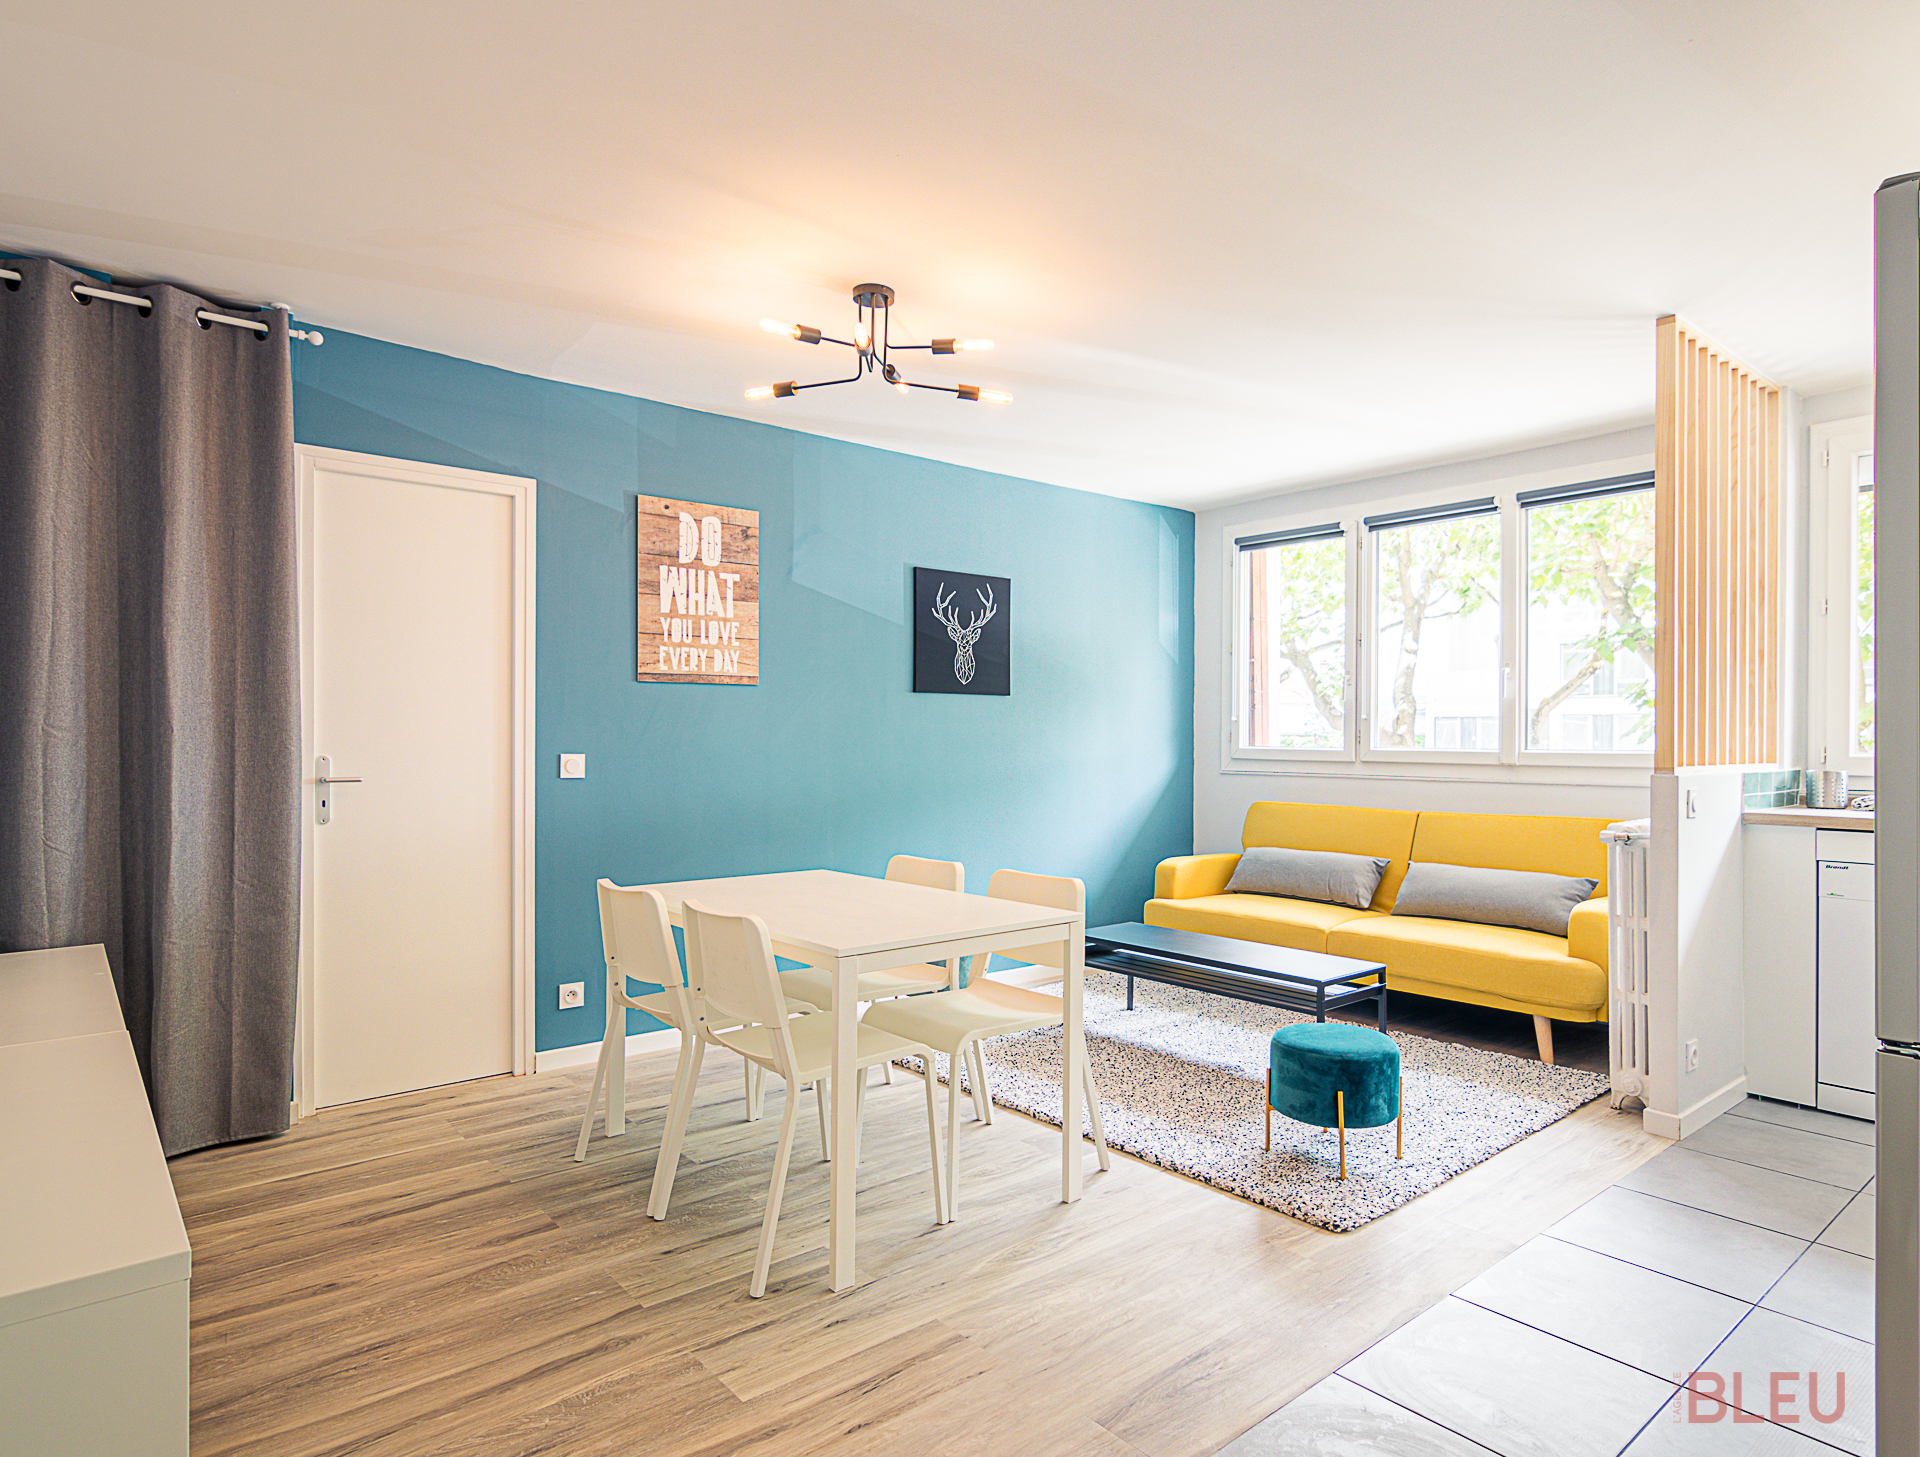 Espace de vie moderne avec coin repas et salon dans une rénovation d'appartement par architecte intérieur Paris, Agence Bleu